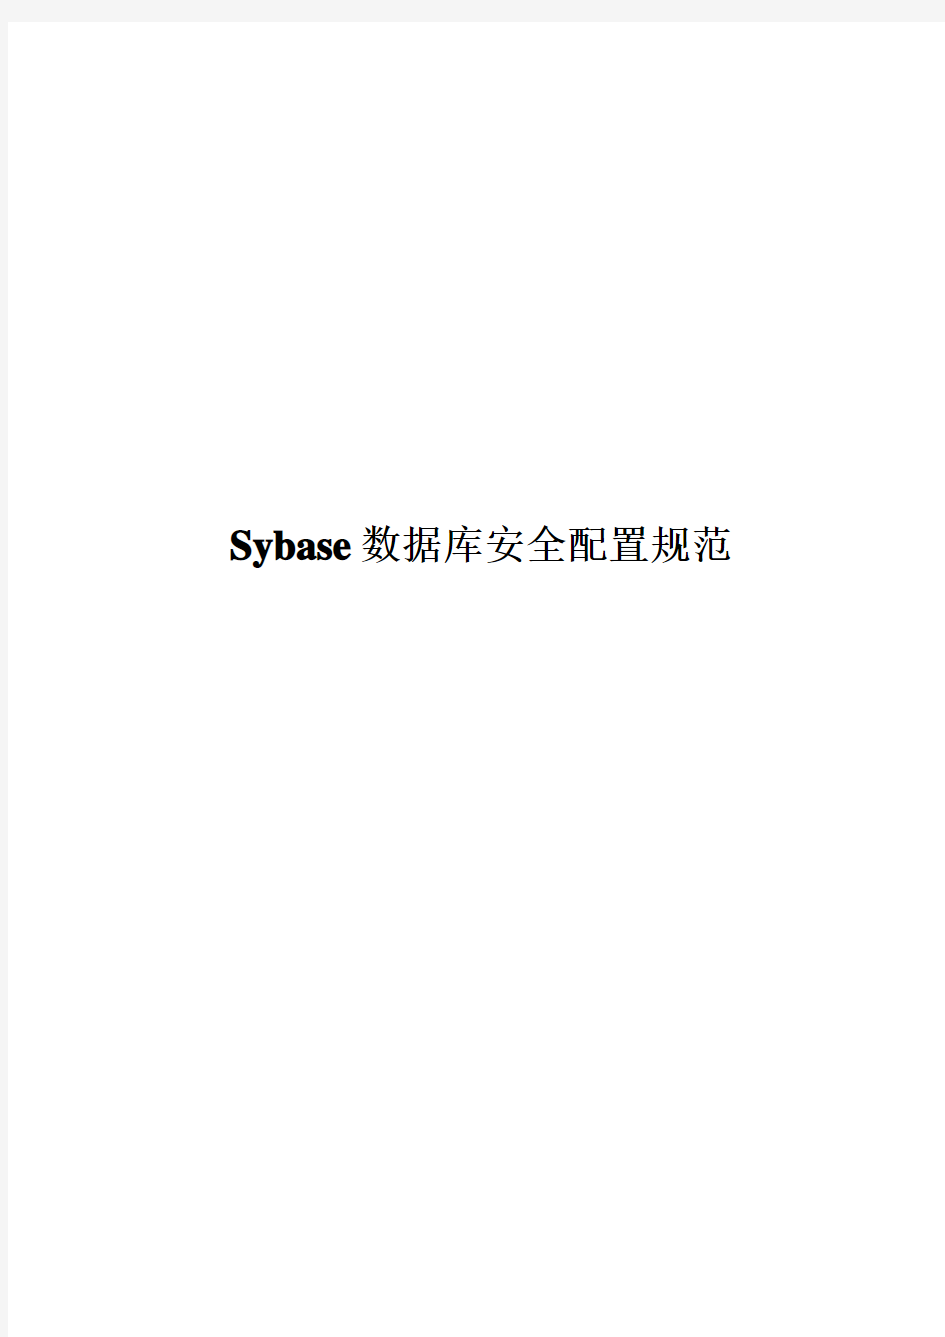 Sybase数据库安全配置规范